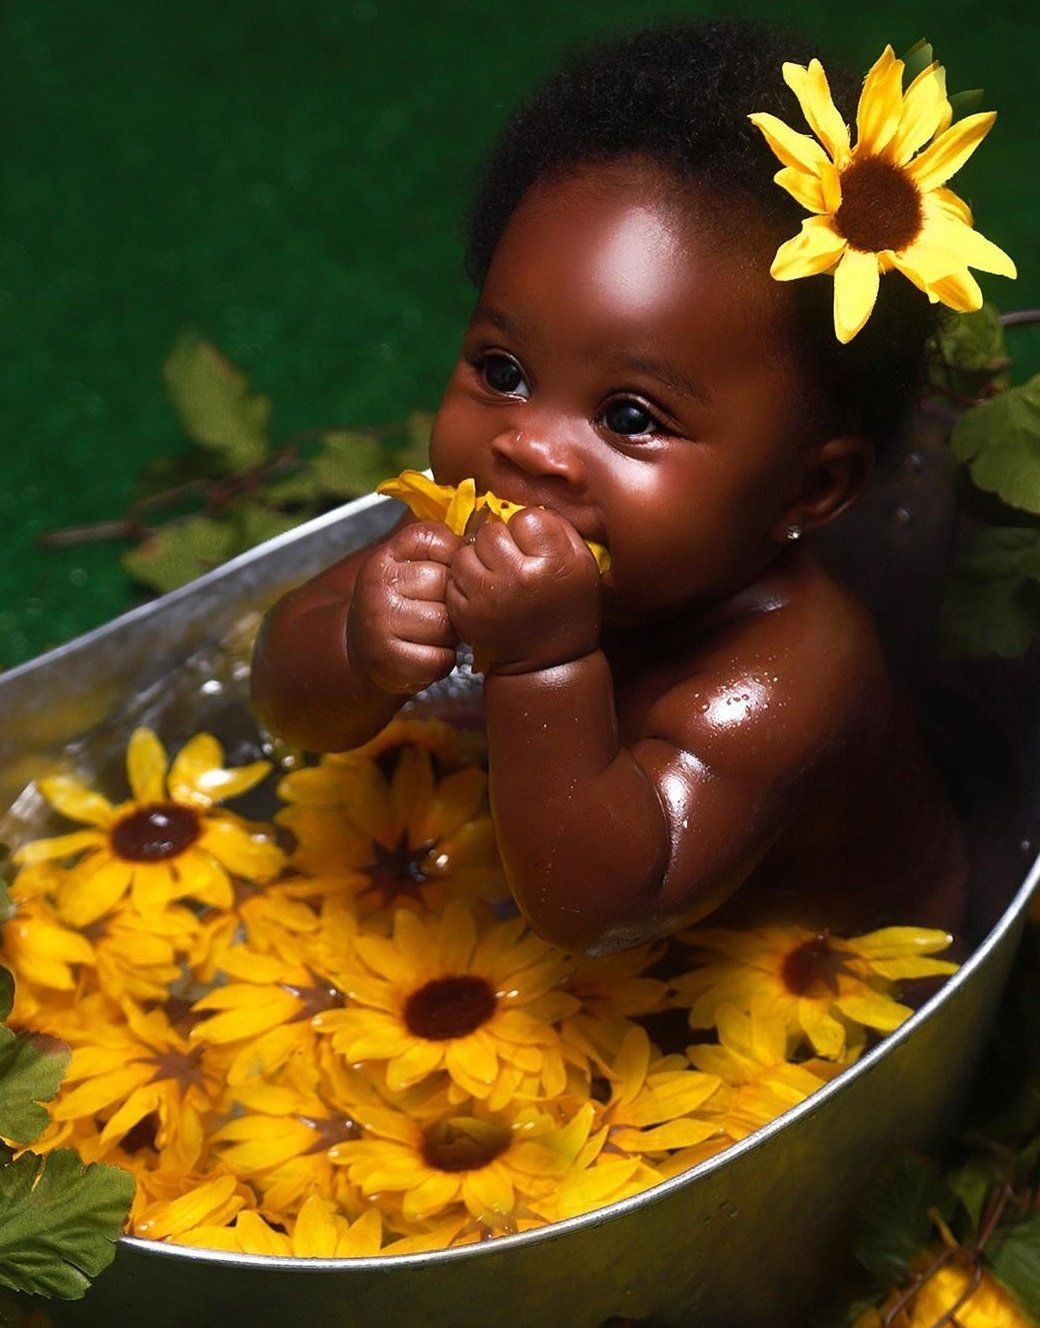 Cute Black Babies on Twitter. Cute black babies, Black baby girls, Beautiful black babies